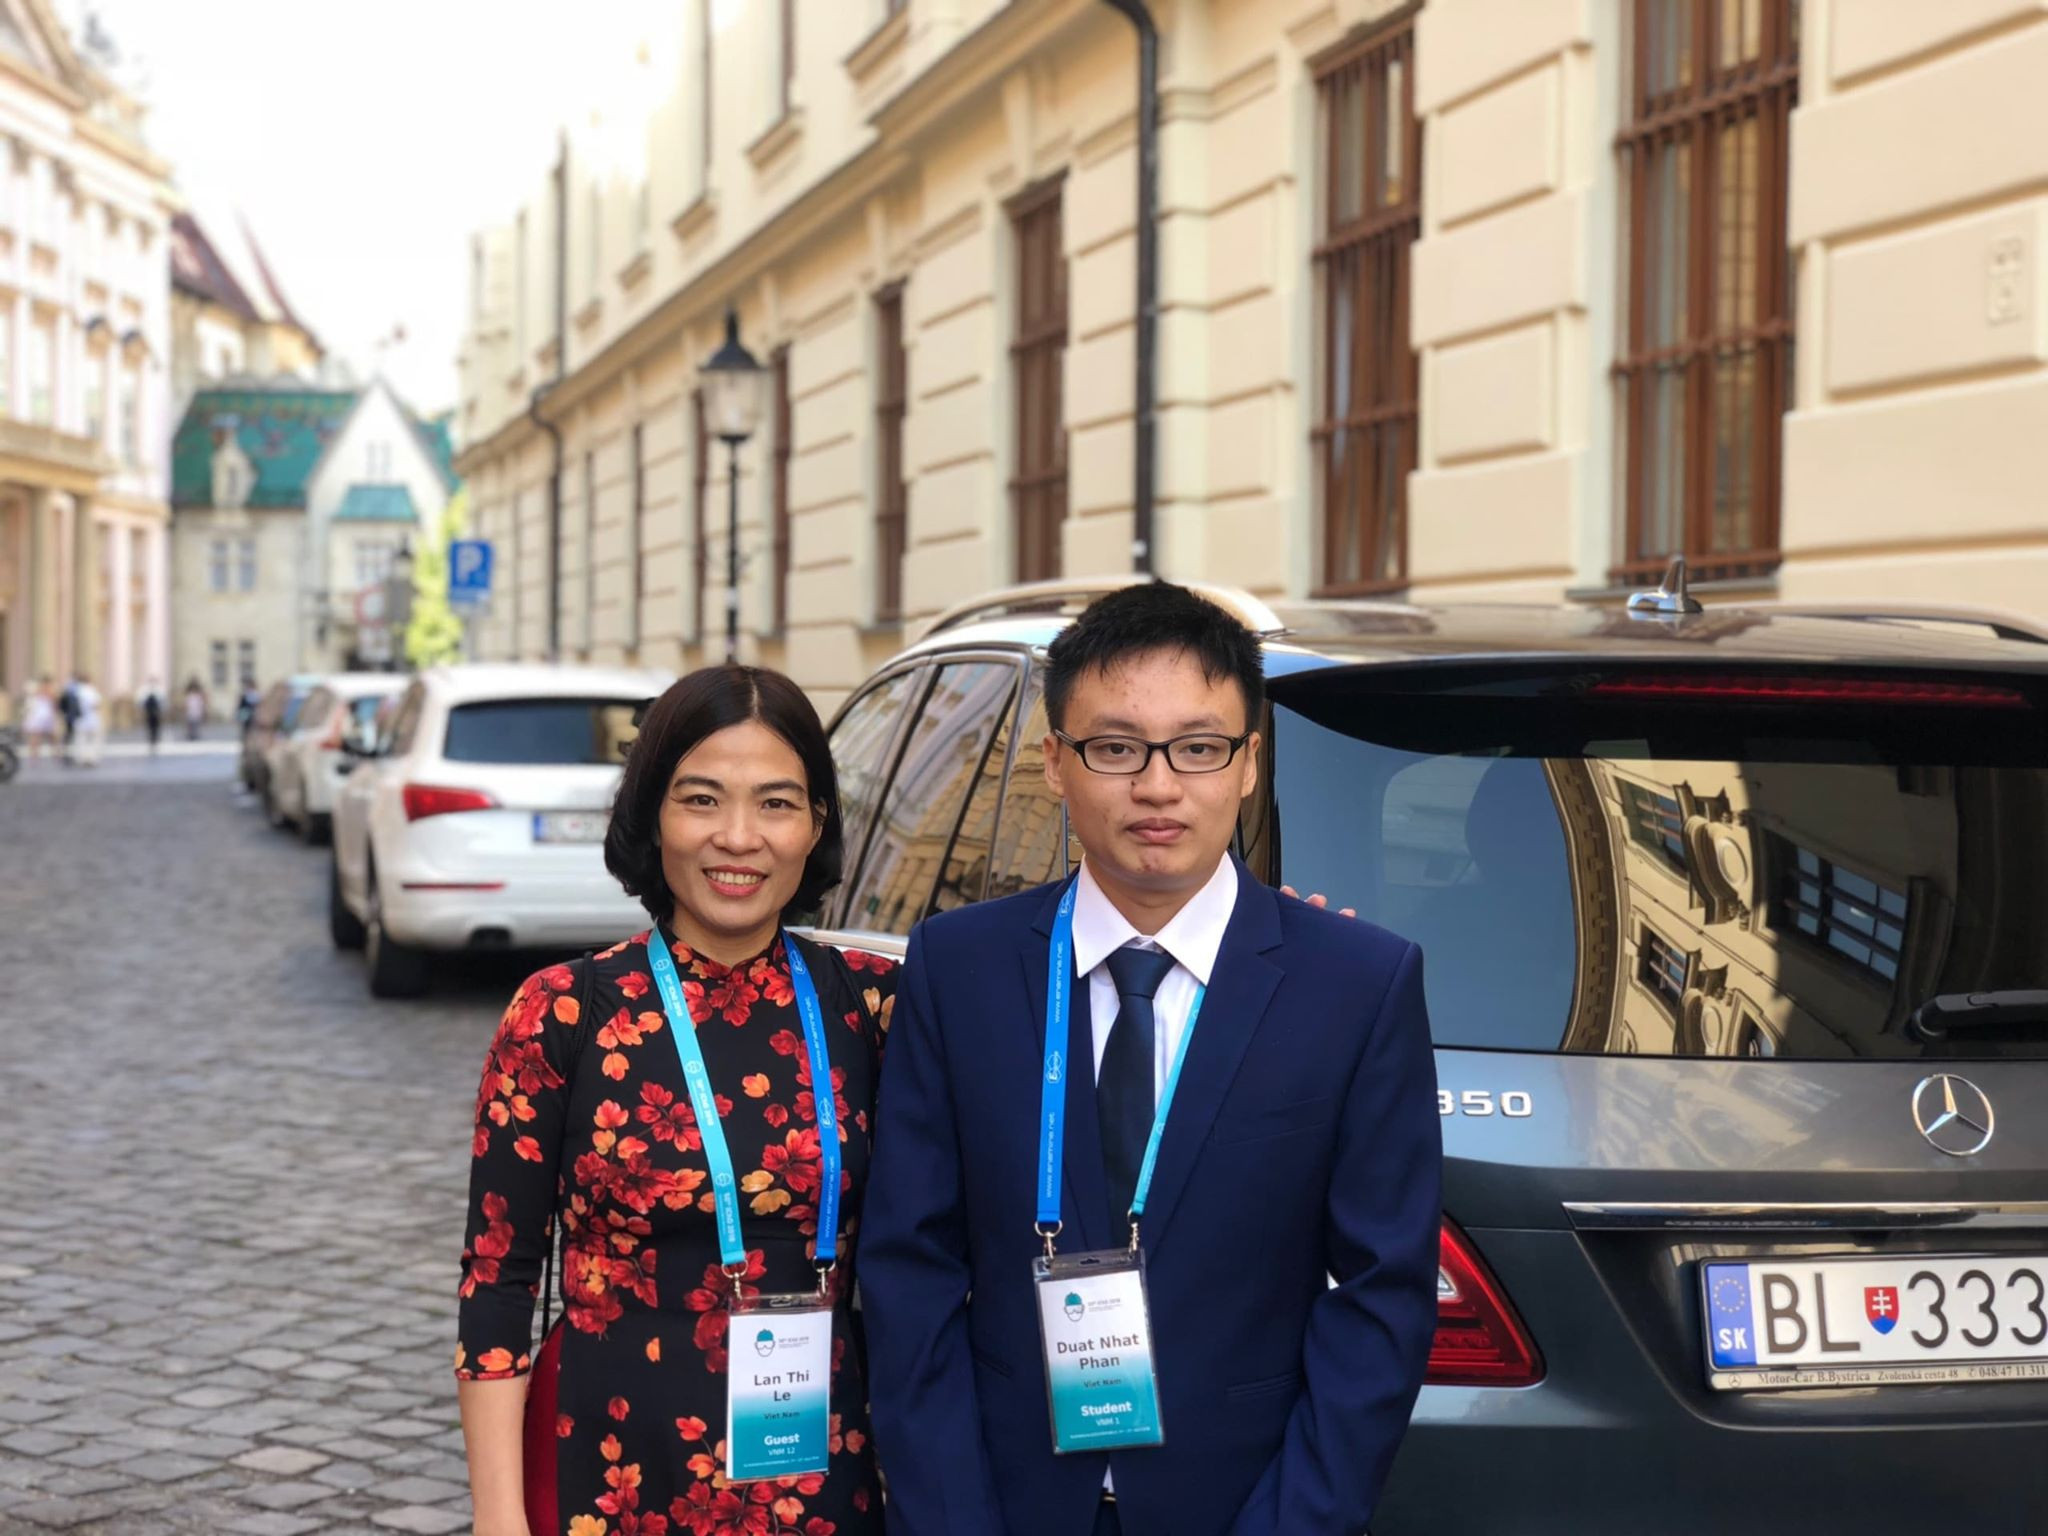 Học sinh Phan Nhật Duật và cô giáo Lê Thị Lan tại Kỳ thi Olympic Hóa học quốc tế. Ảnh: NVCC